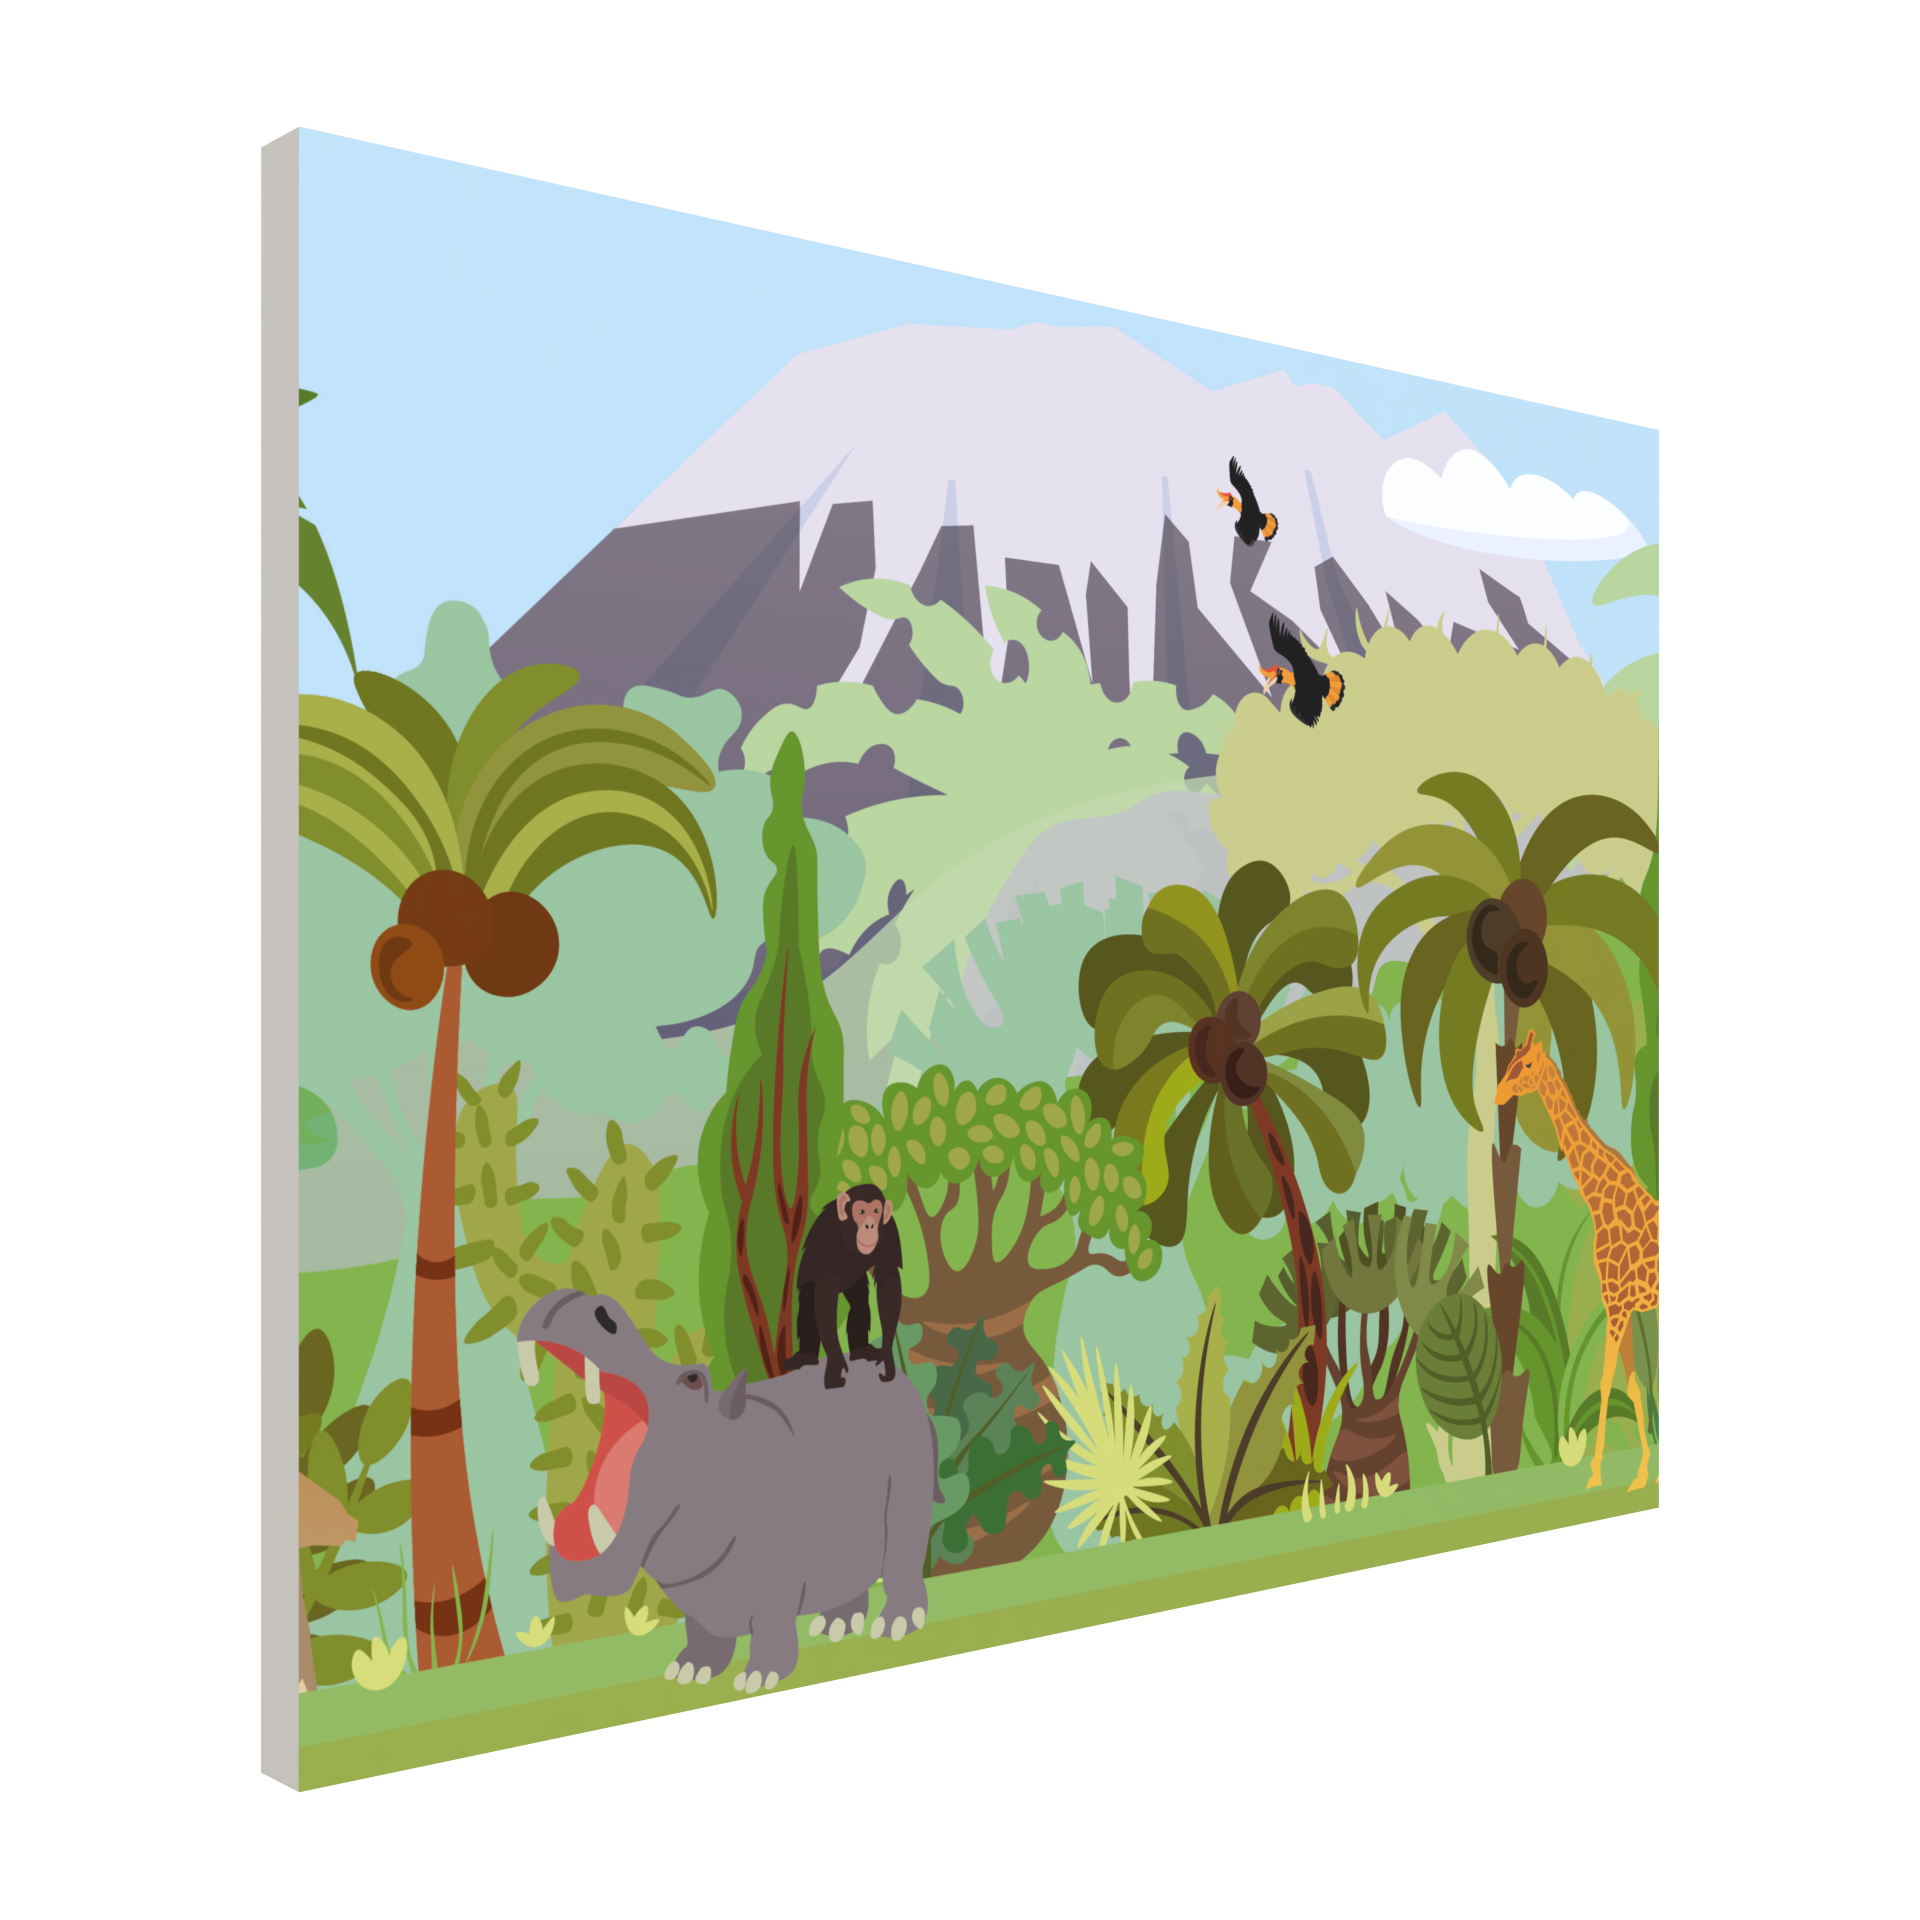 wandbekleding in een leuk jungle thema, speciaal voor een kinderhoek of speelruimte